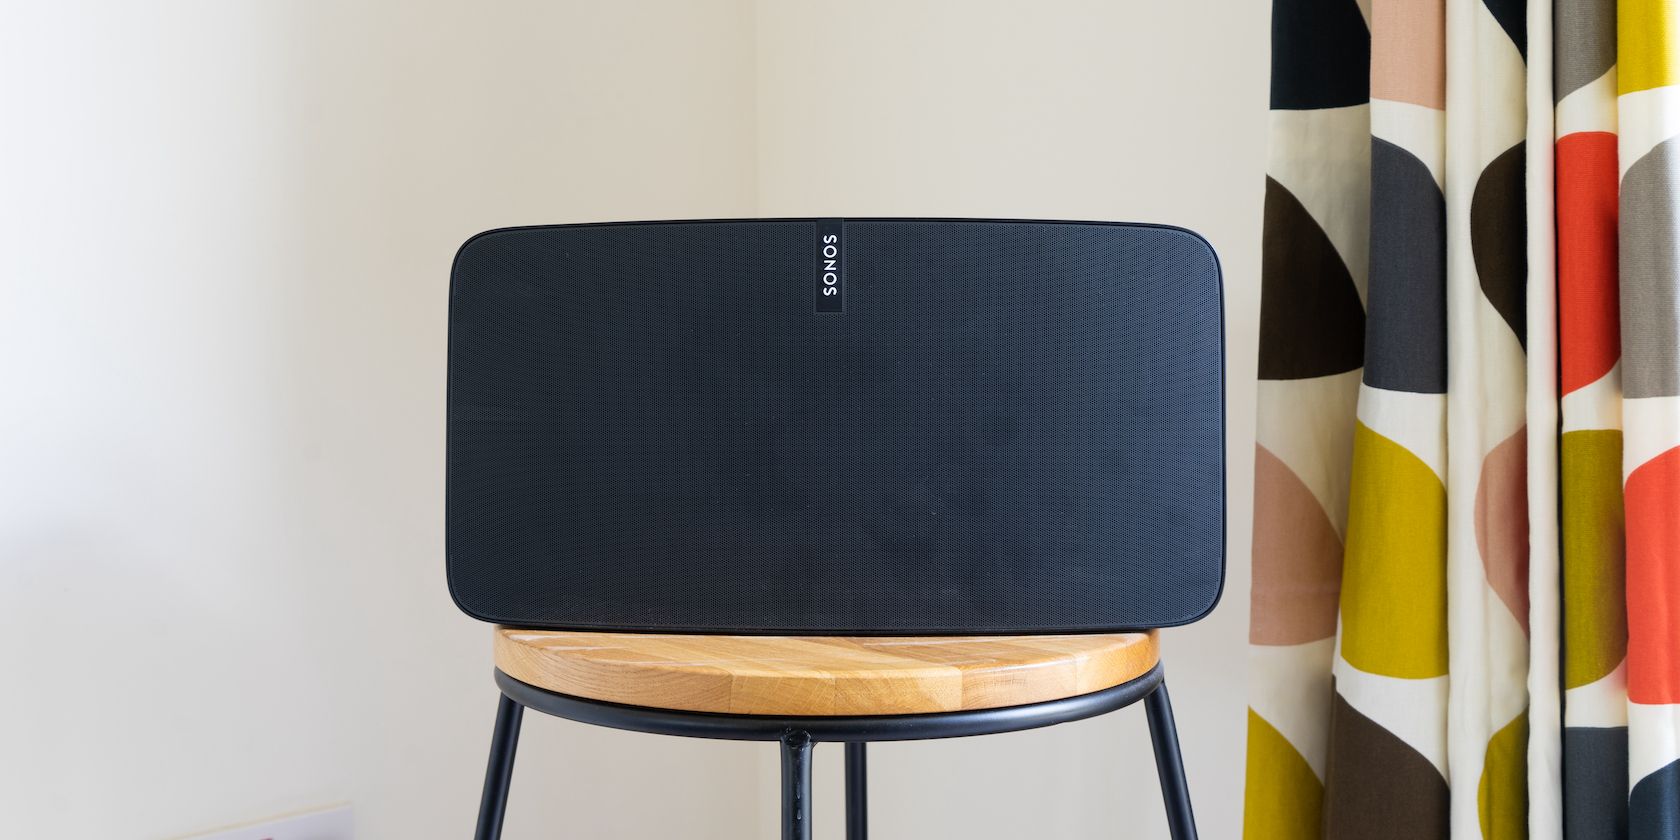 Best Sonos Speaker For Living Room